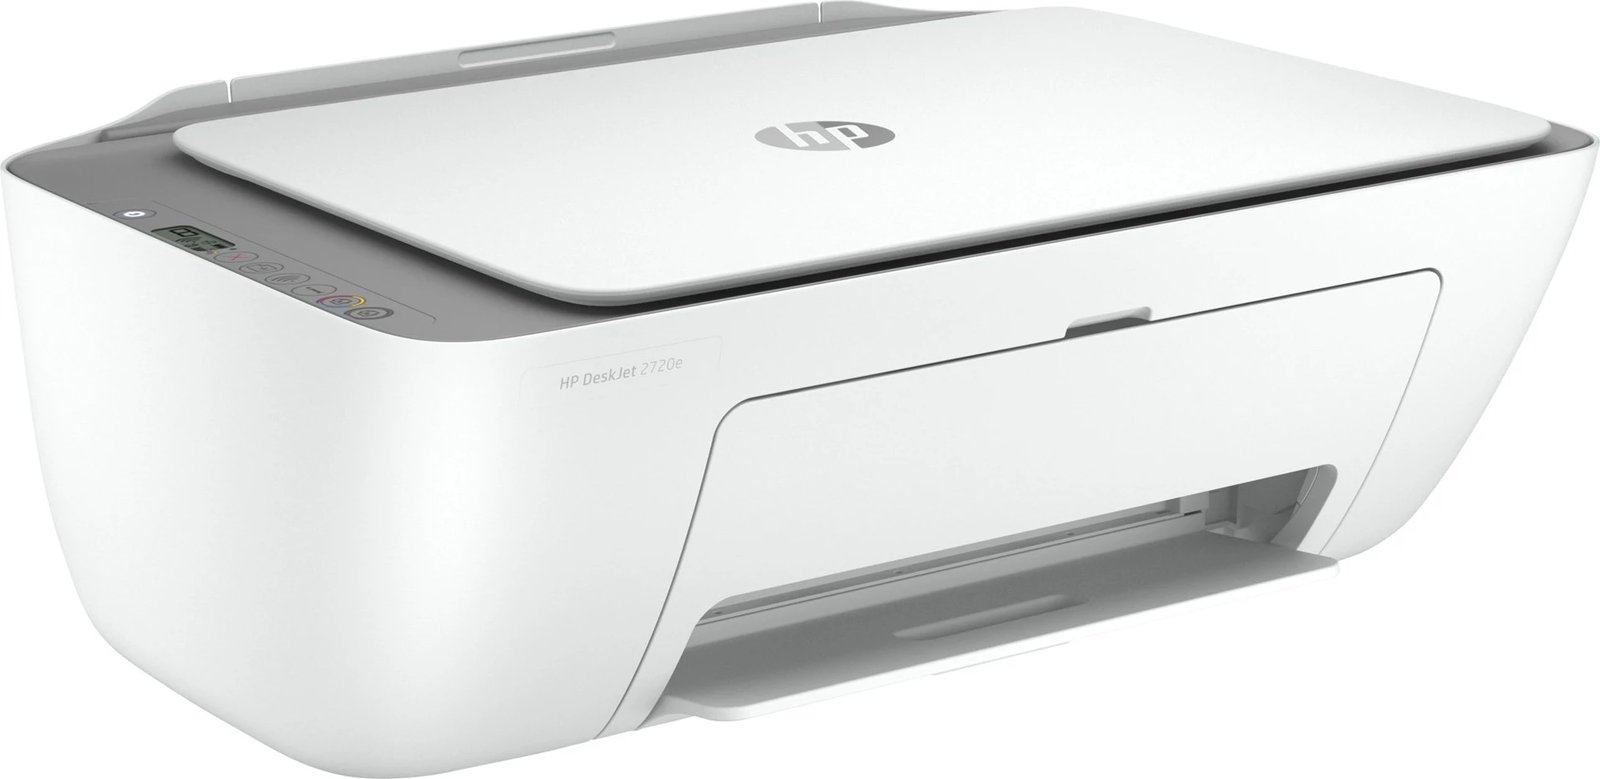 Printer HP DeskJet 2720e, 7.5 ppm Wi-Fi, i bardhë